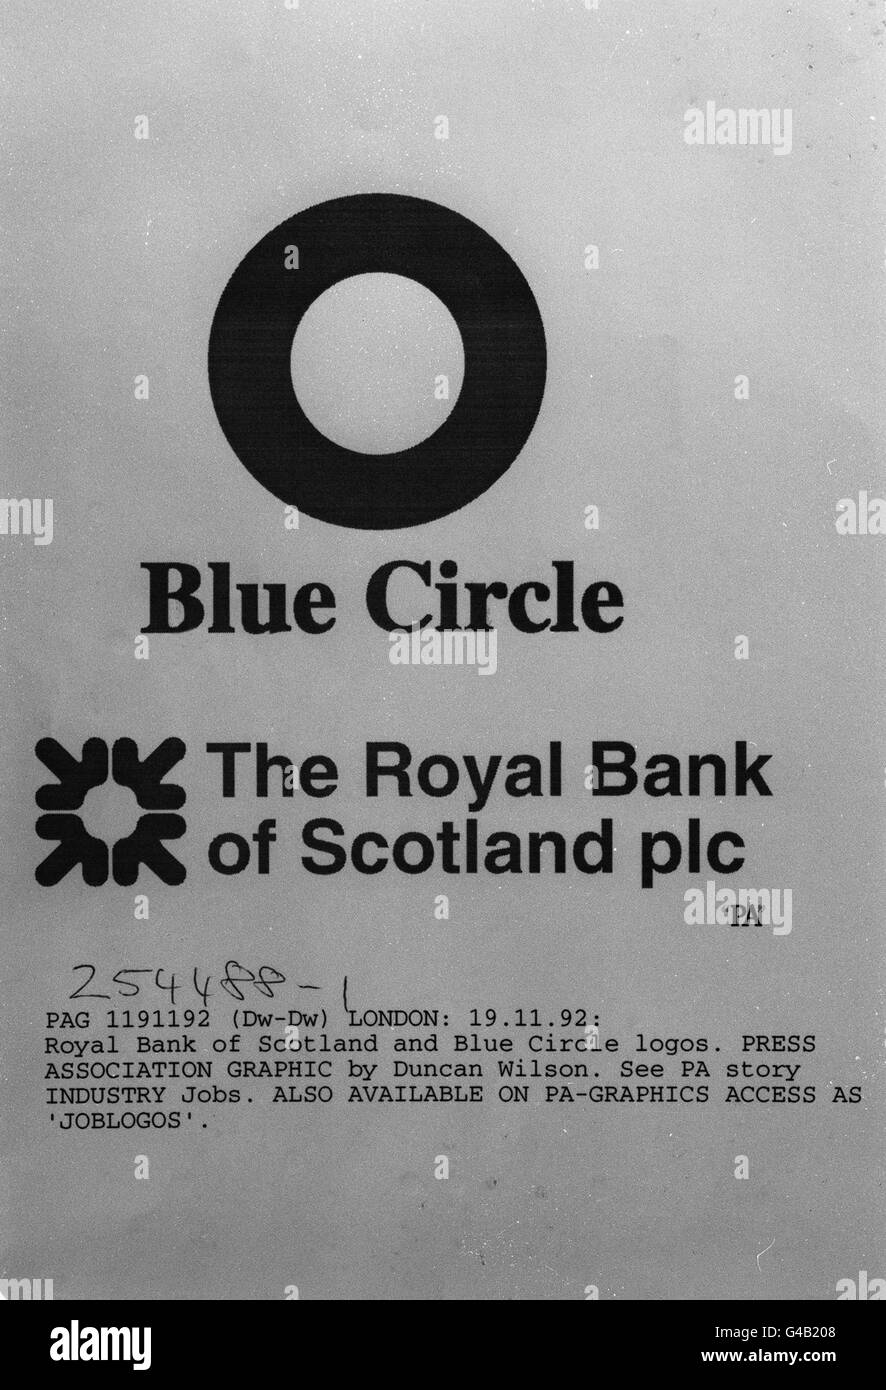 PA NEWS FOTO 19/11/92 FIRMENLOGOS GRAFIK DER ROYAL BANK OF SCOTLAND UND BLAUE KREIS-LOGOS Stockfoto